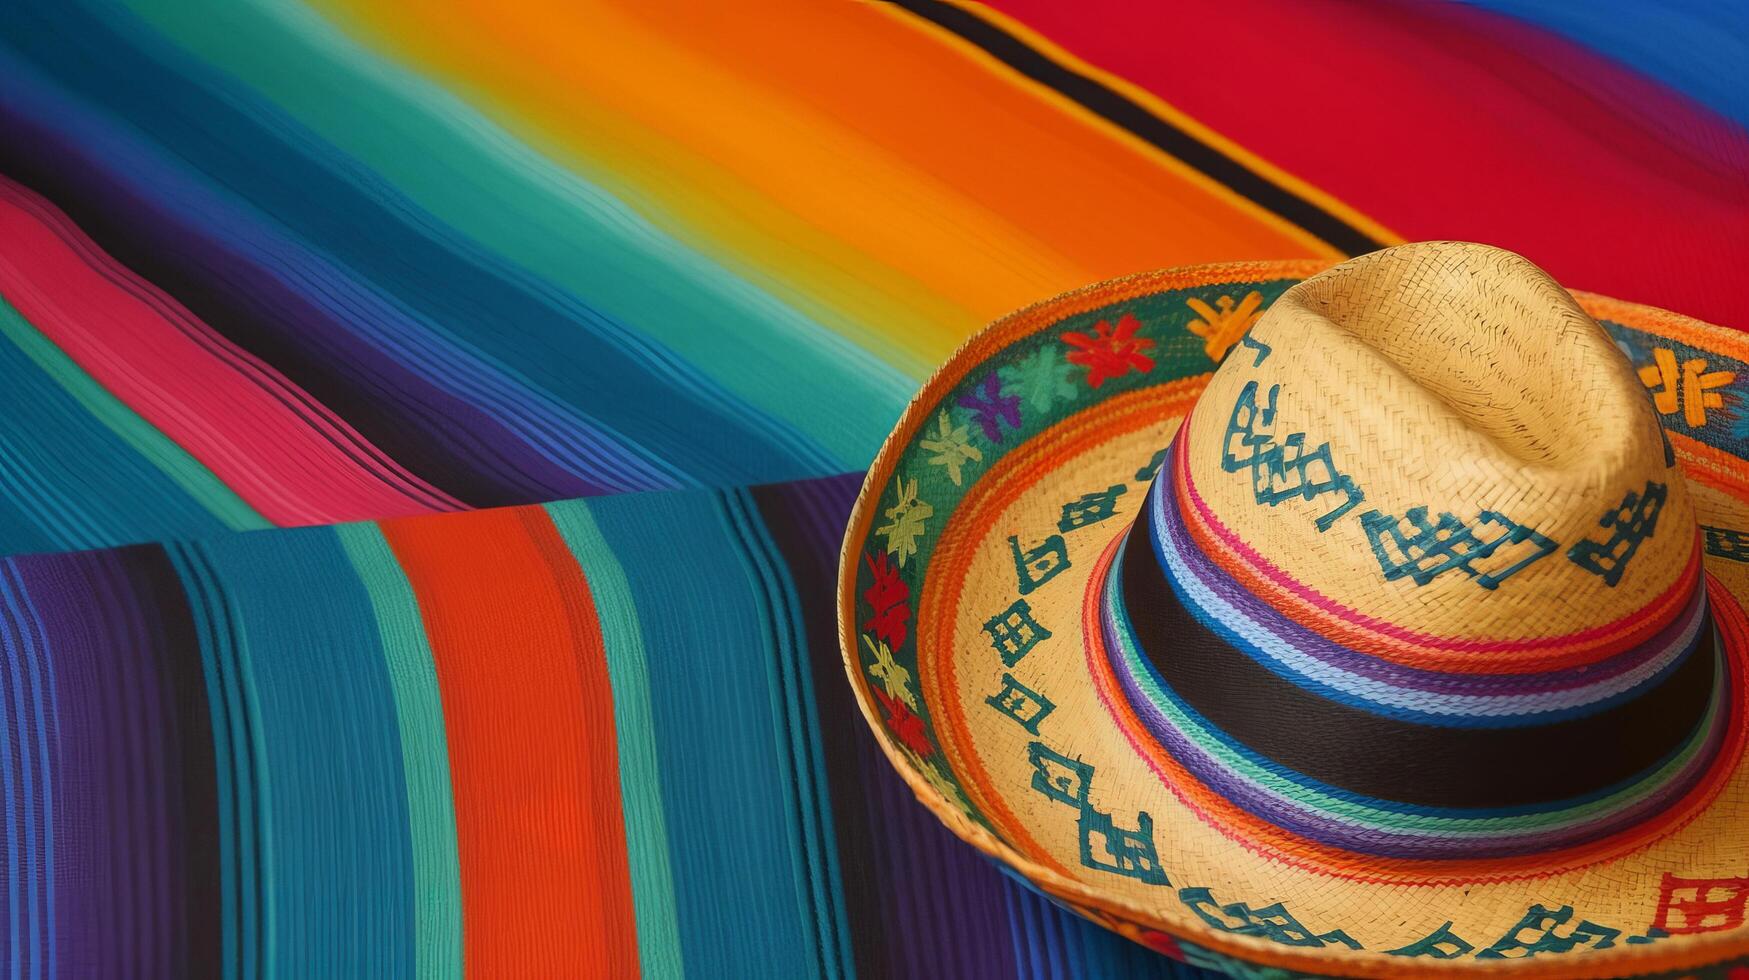 mexikansk hatt bakgrund. illustration ai generativ foto